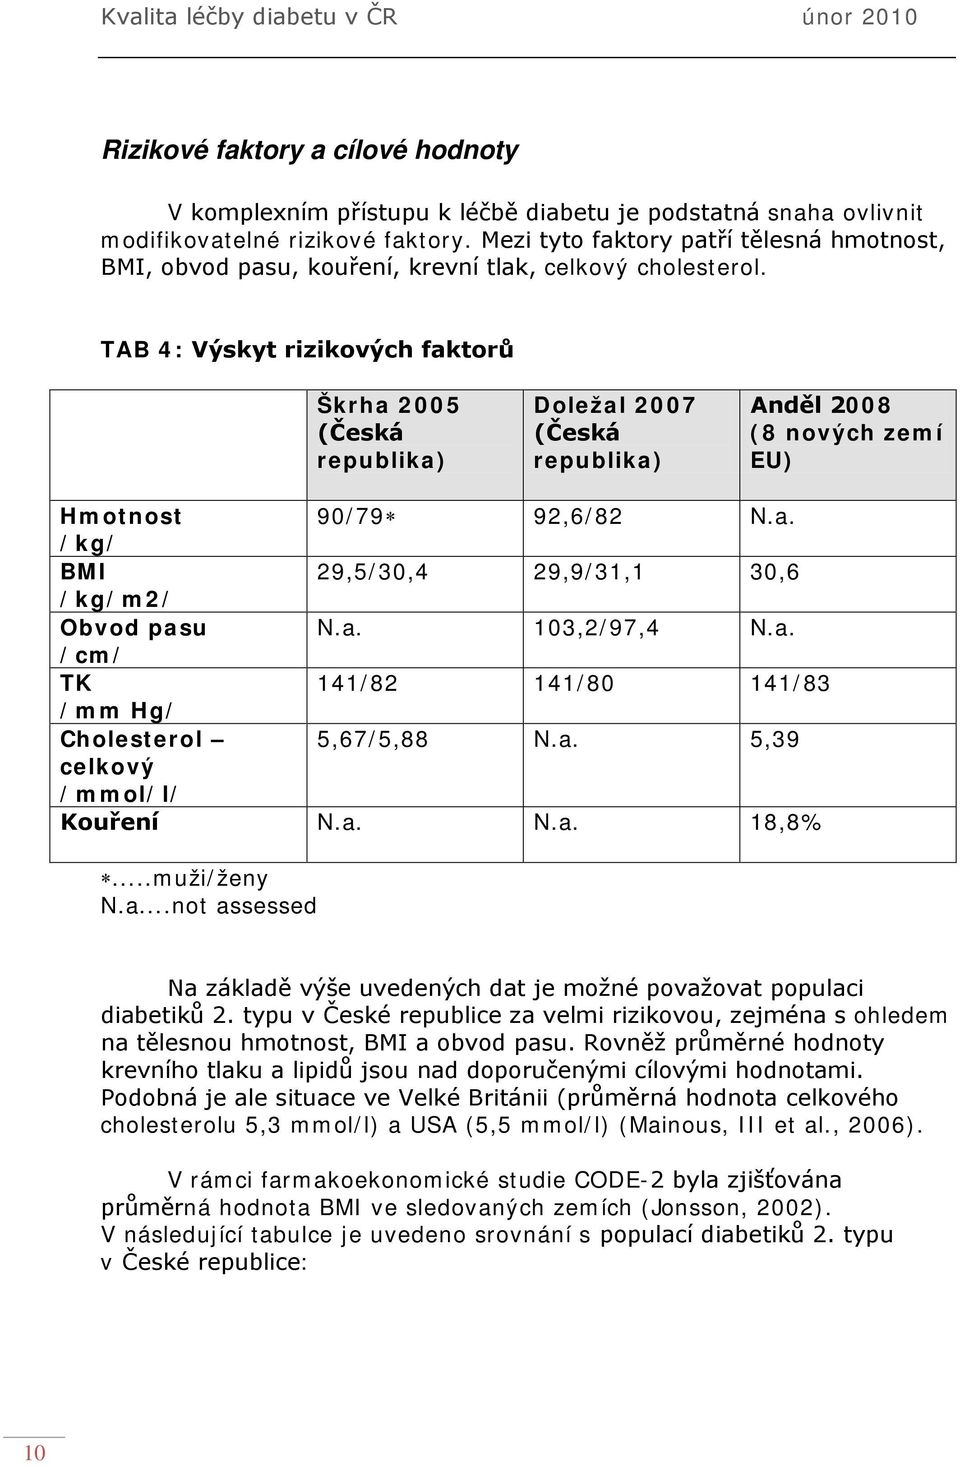 TAB 4: Výskyt rizikových faktorů Škrha 2005 (Česká republika) Doležal 2007 (Česká republika) Anděl 2008 (8 nových zemí EU) Hmotnost 90/79 92,6/82 N.a. /kg/ BMI 29,5/30,4 29,9/31,1 30,6 /kg/m2/ Obvod pasu N.